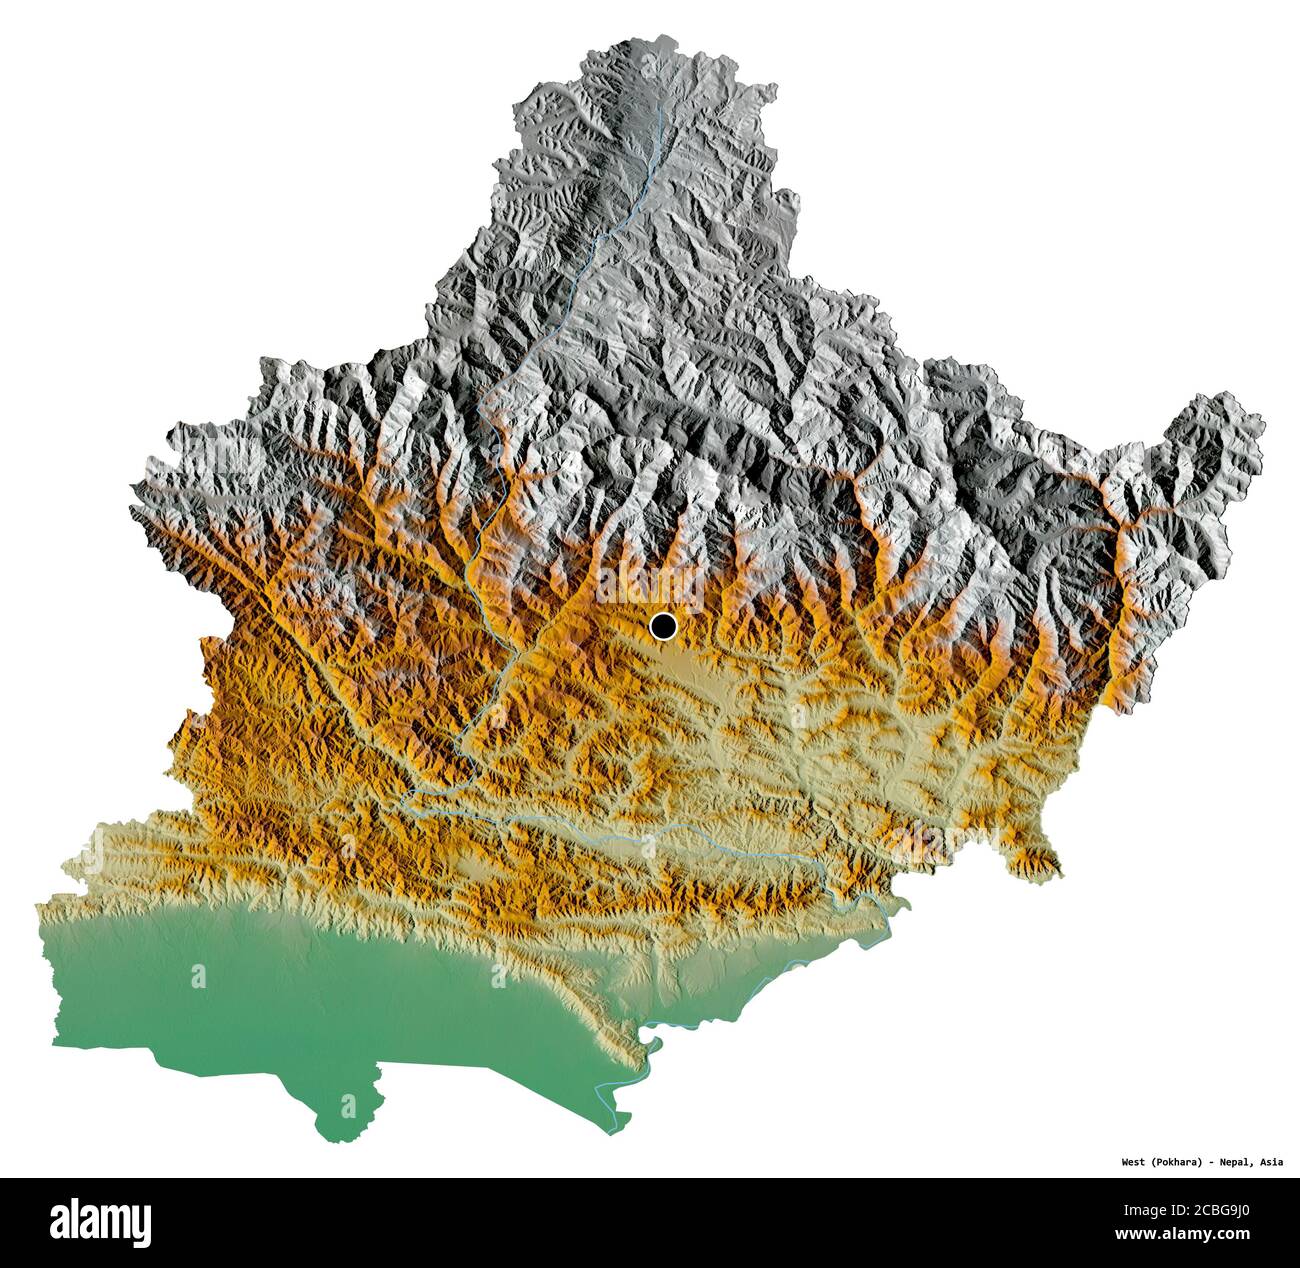 Forme de l'Ouest, région de développement du Népal, avec sa capitale isolée sur fond blanc. Carte topographique de relief. Rendu 3D Banque D'Images